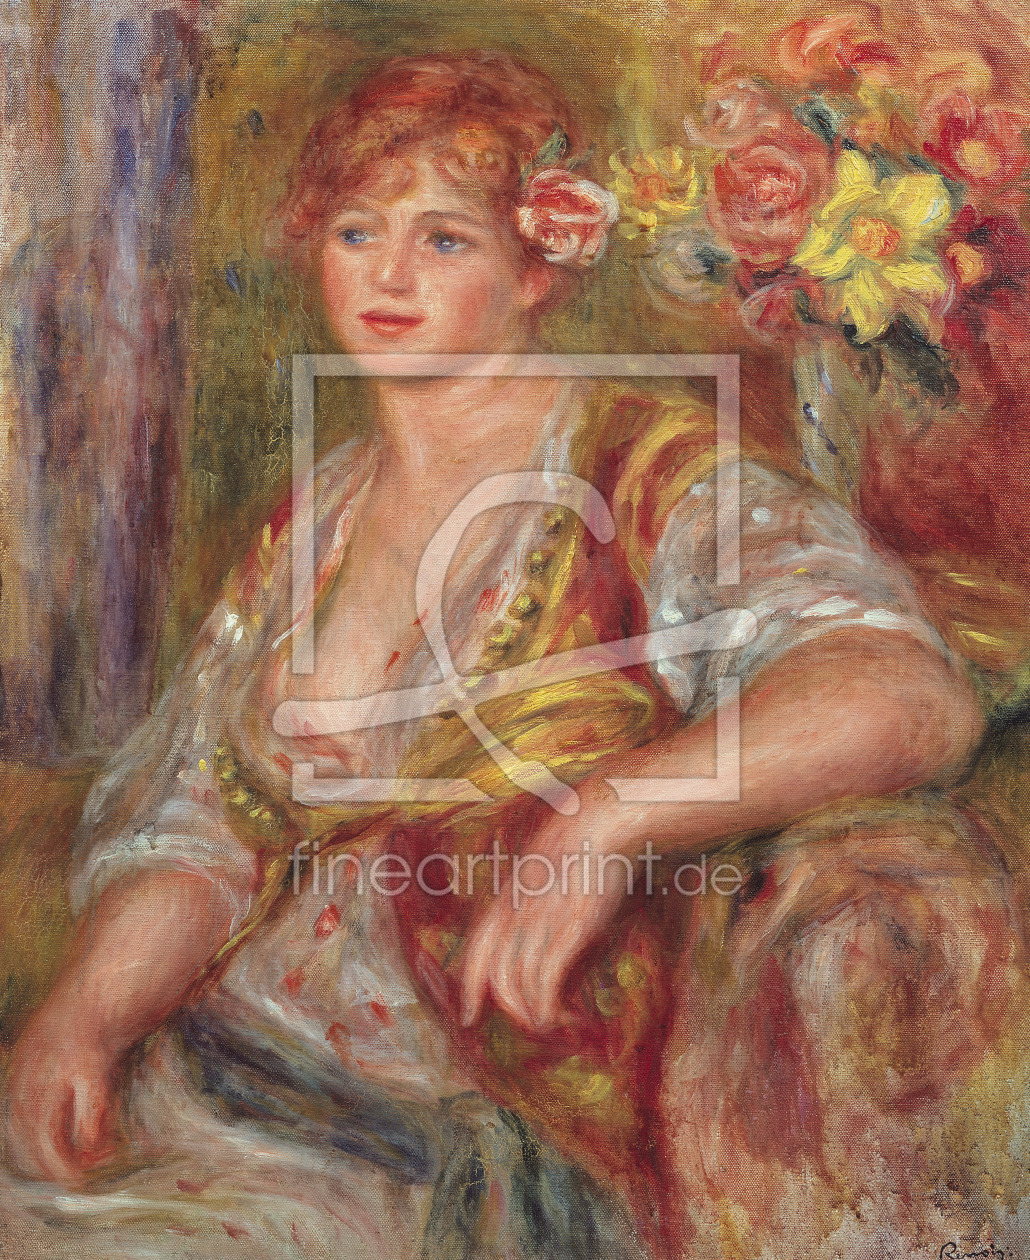 Bild-Nr.: 31001110 Blonde Woman with a Rose, c.1915 erstellt von Renoir, Pierre-Auguste